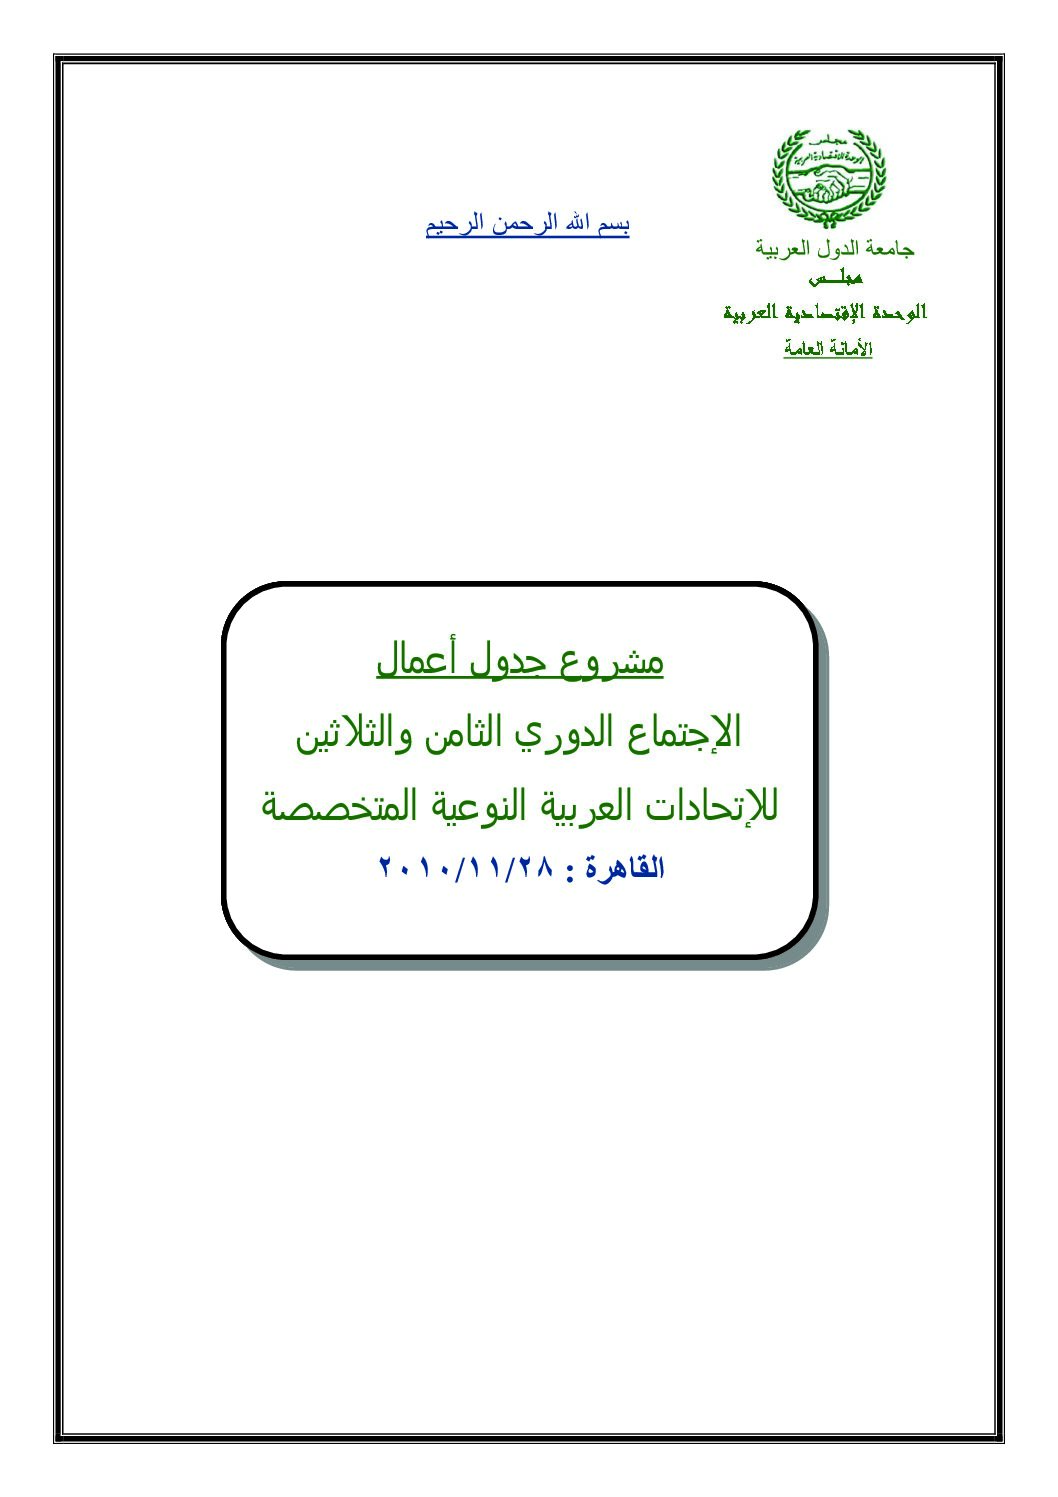 الاجتماع الدوري /38/ للاتحادات العربية النوعية المتخصصة-11/28/2010